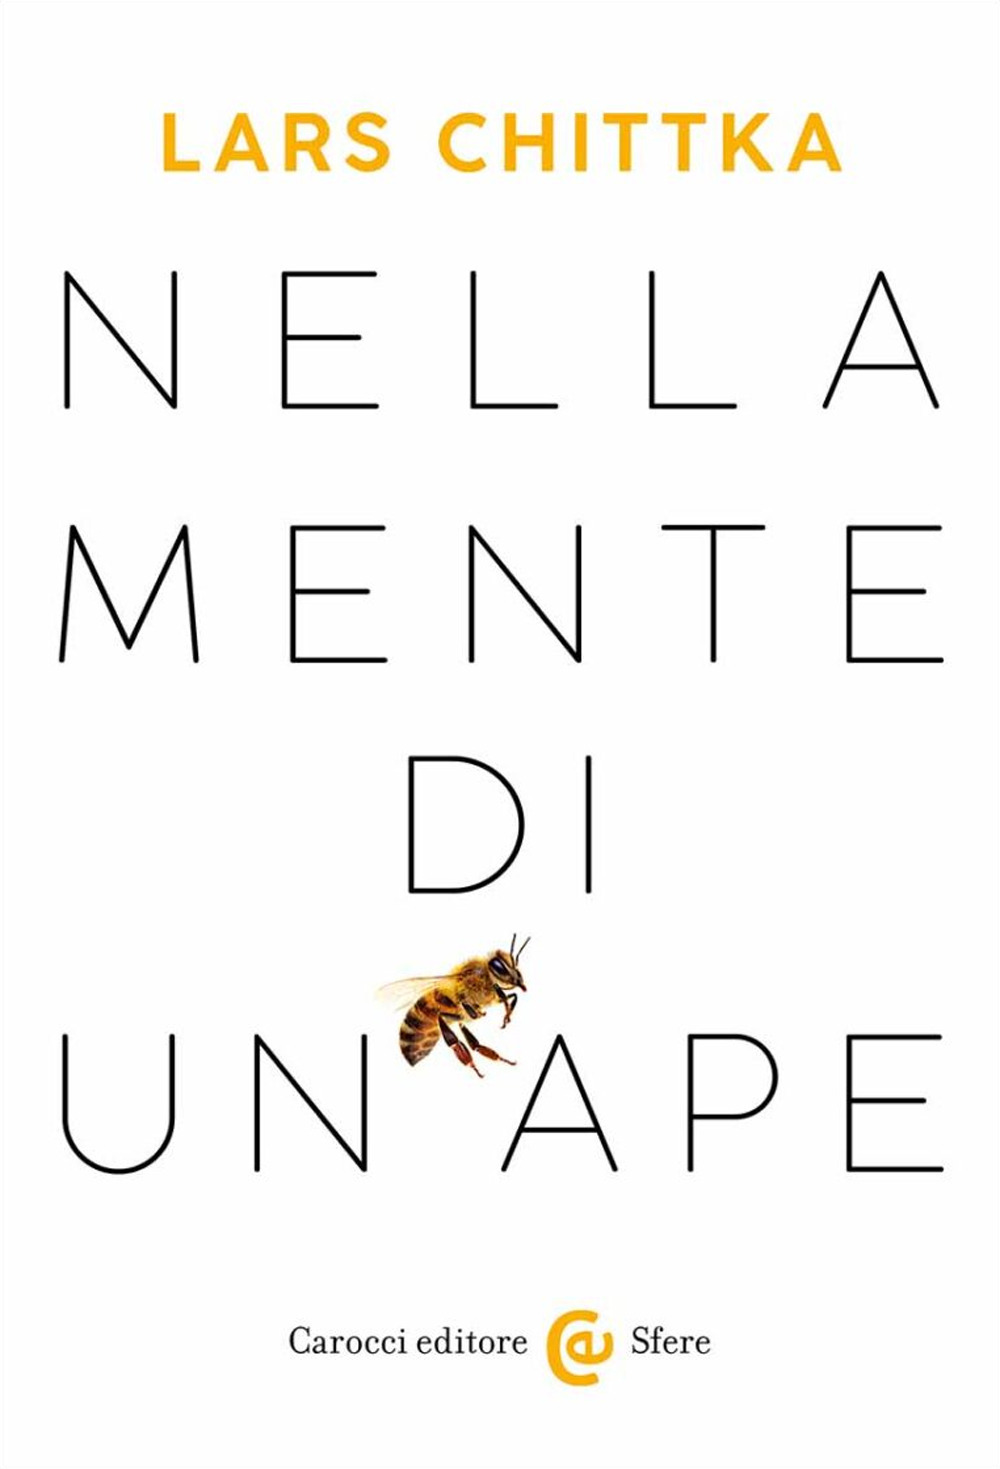 Libri Chittka Lars - Nella Mente Di Un'ape NUOVO SIGILLATO, EDIZIONE DEL 26/05/2023 SUBITO DISPONIBILE